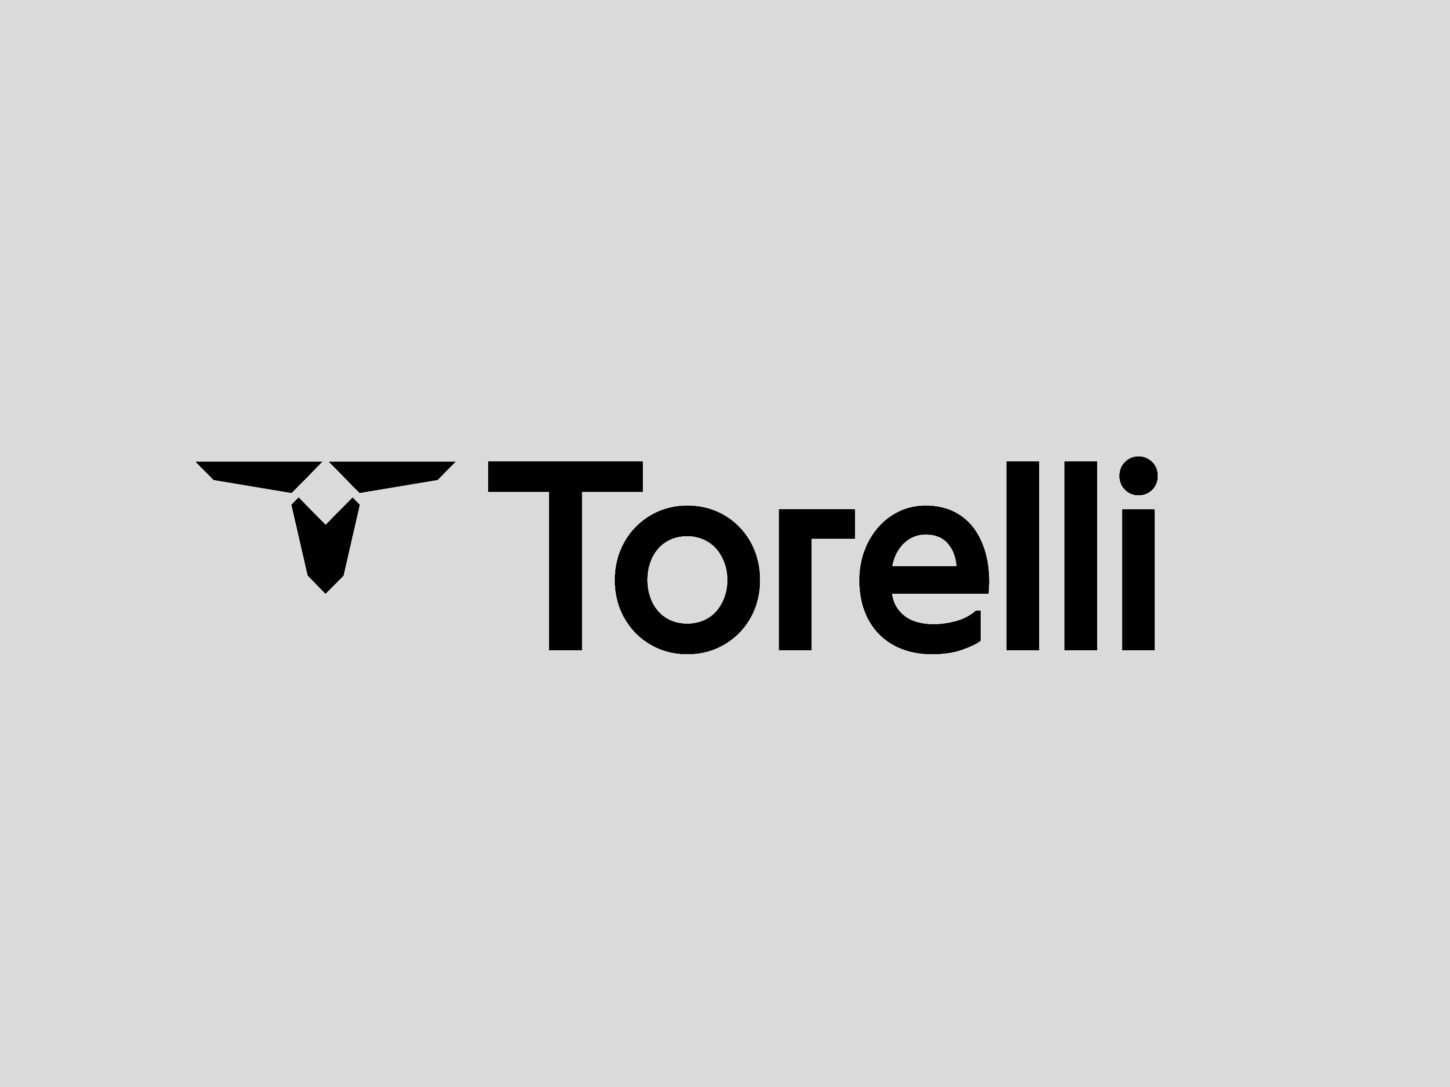 «Torelli» leitet sich vom Nachnamen des Designers ab und die Bildmarke stellt einen abstrahierten Stierkopf dar.